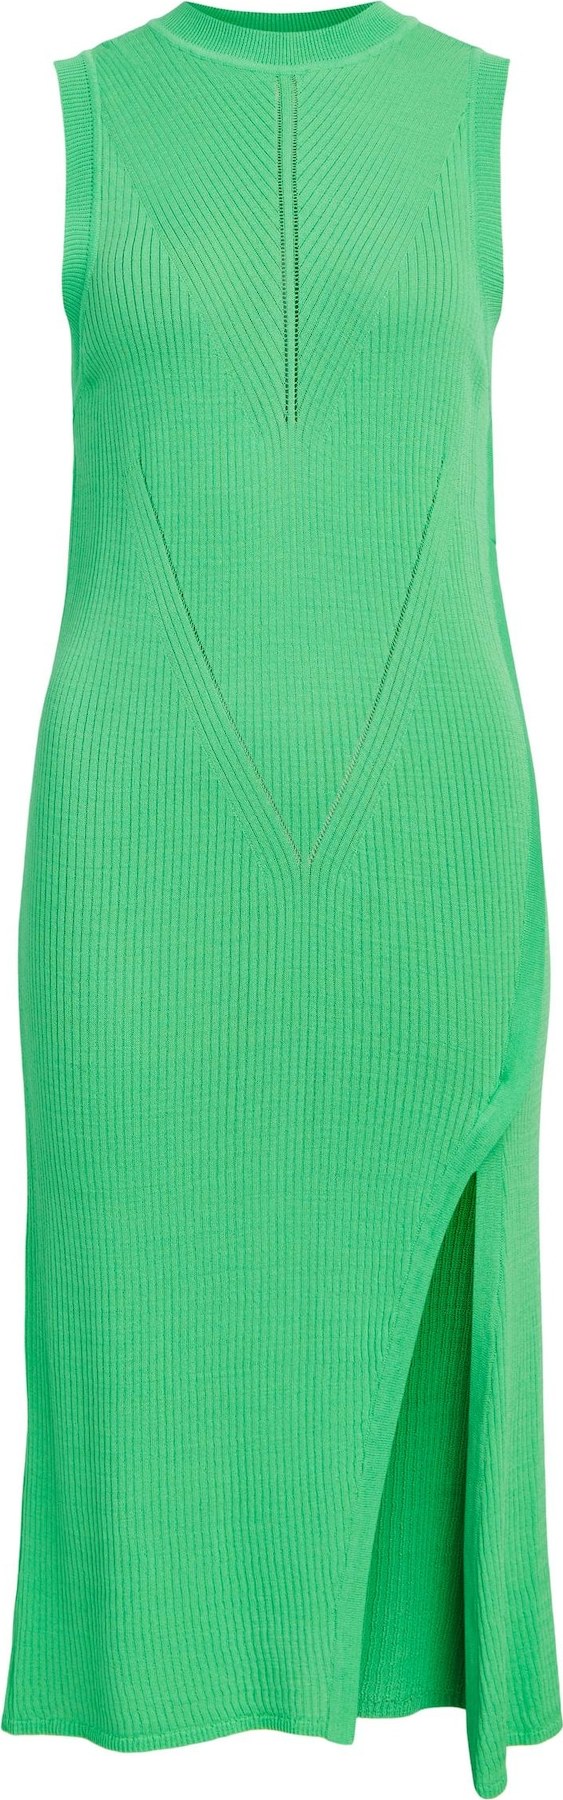 OBJECT Úpletové šaty 'Bianka' zelená